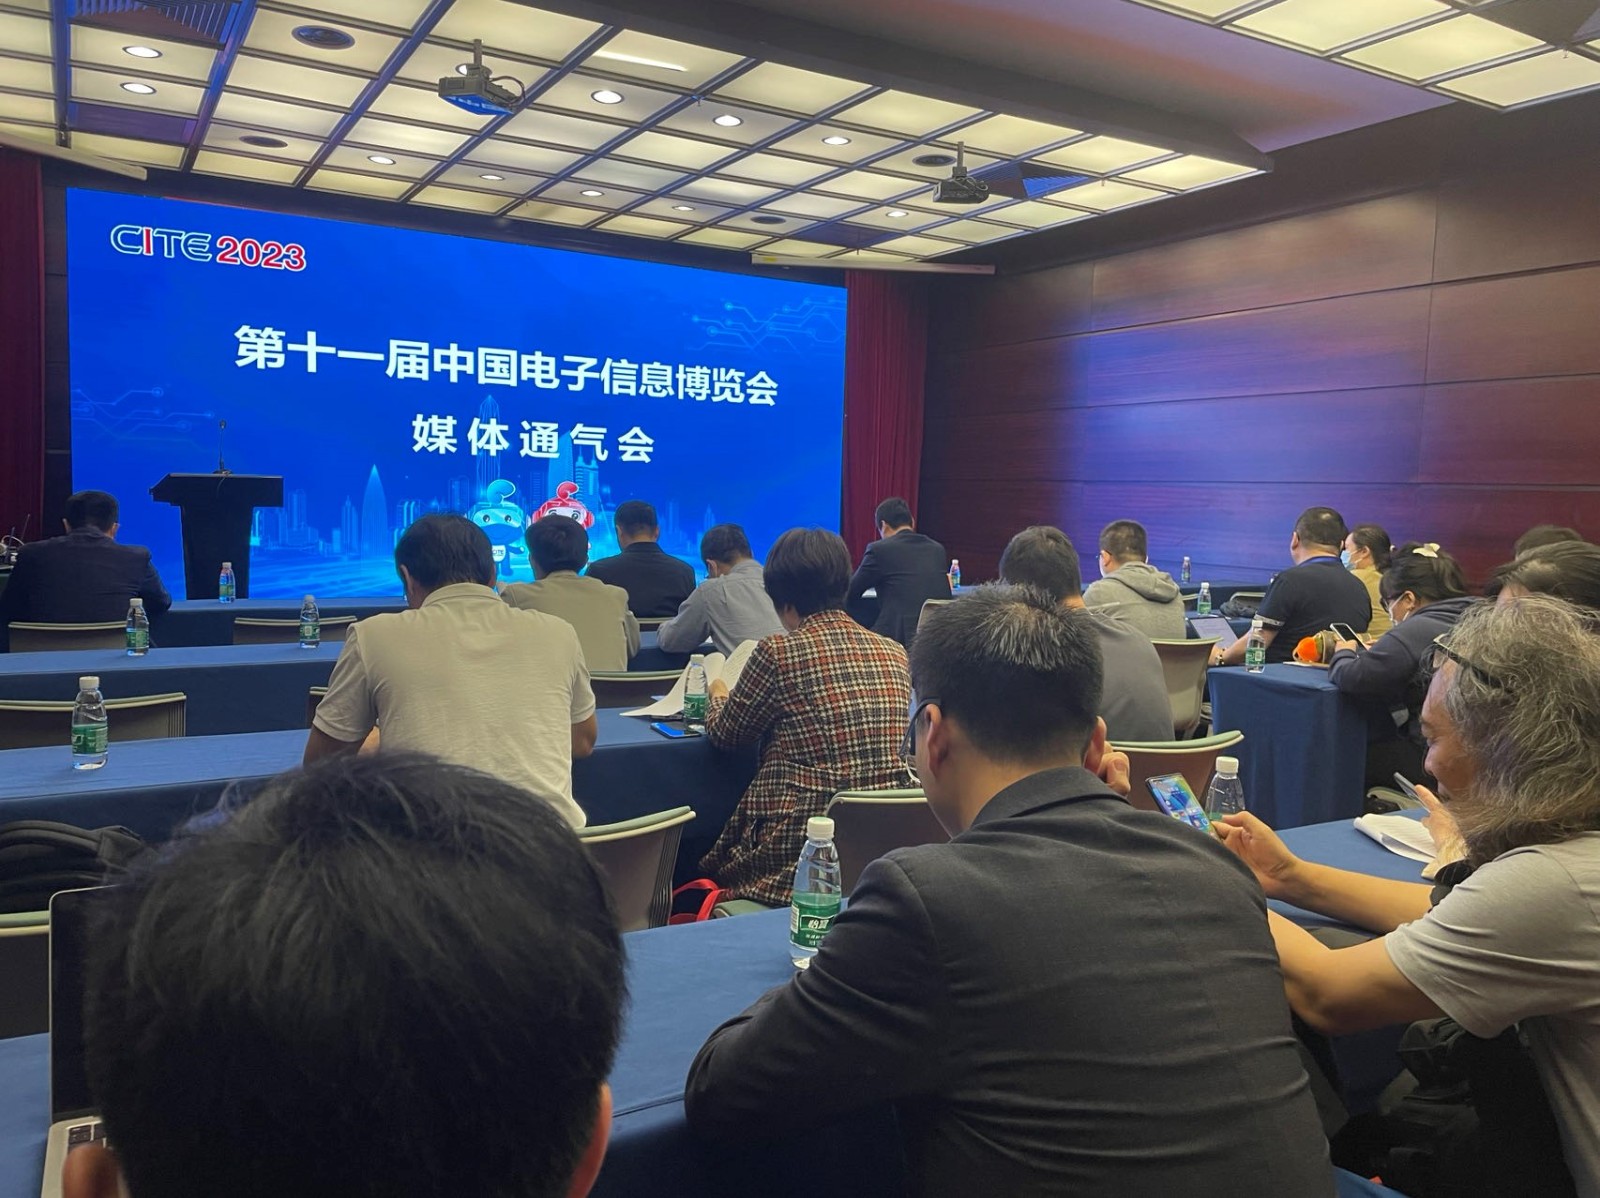 迈步新征程  谱写新篇章 第十一届中国电子信息博览会将于4月7日盛大开幕